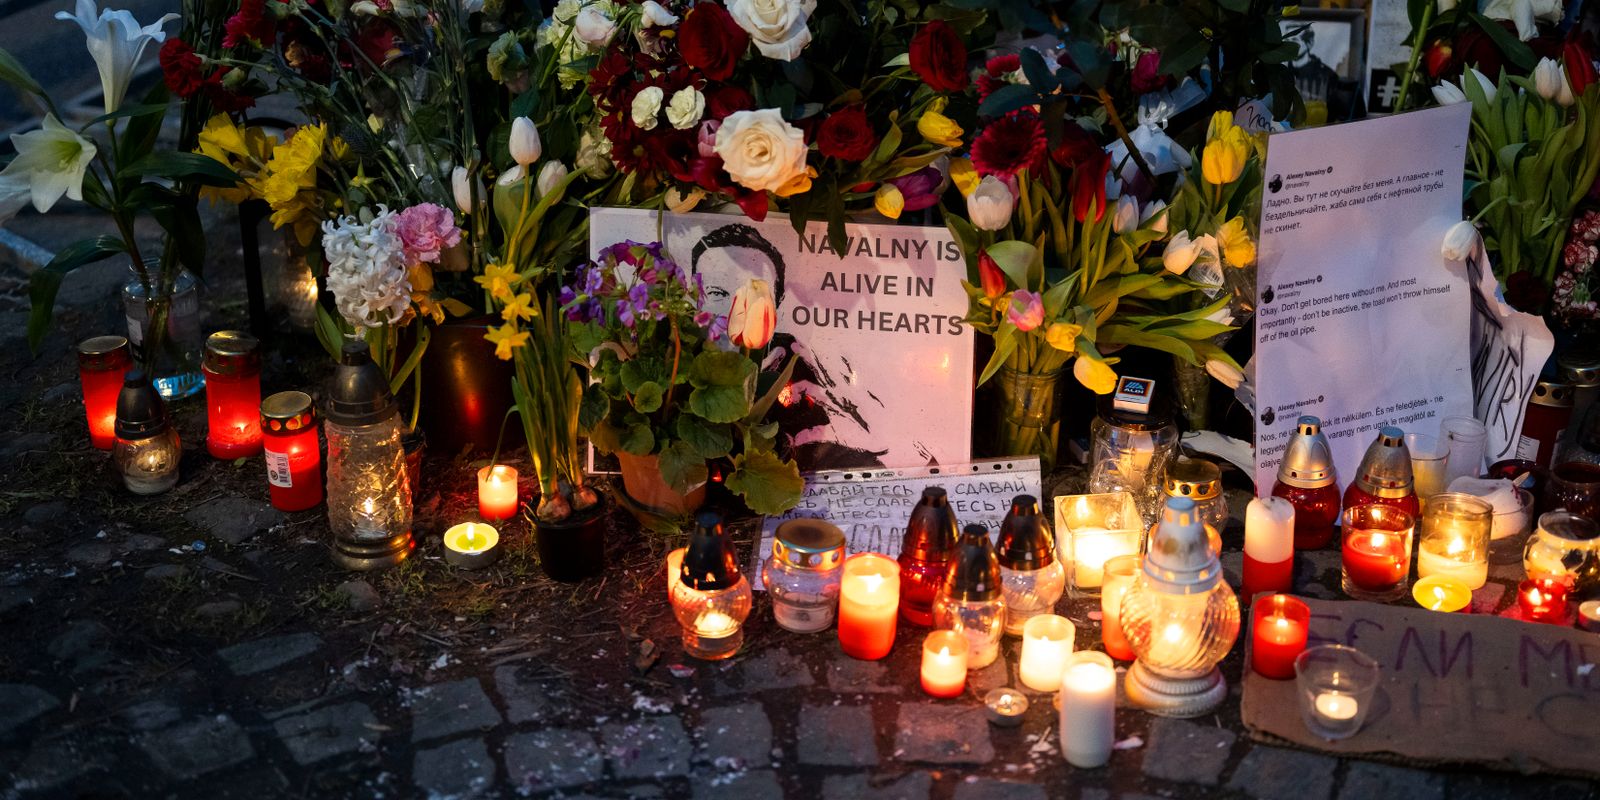 navalnyj sörjdes världen över – julia i stockholm: ”jag är inte rädd längre”